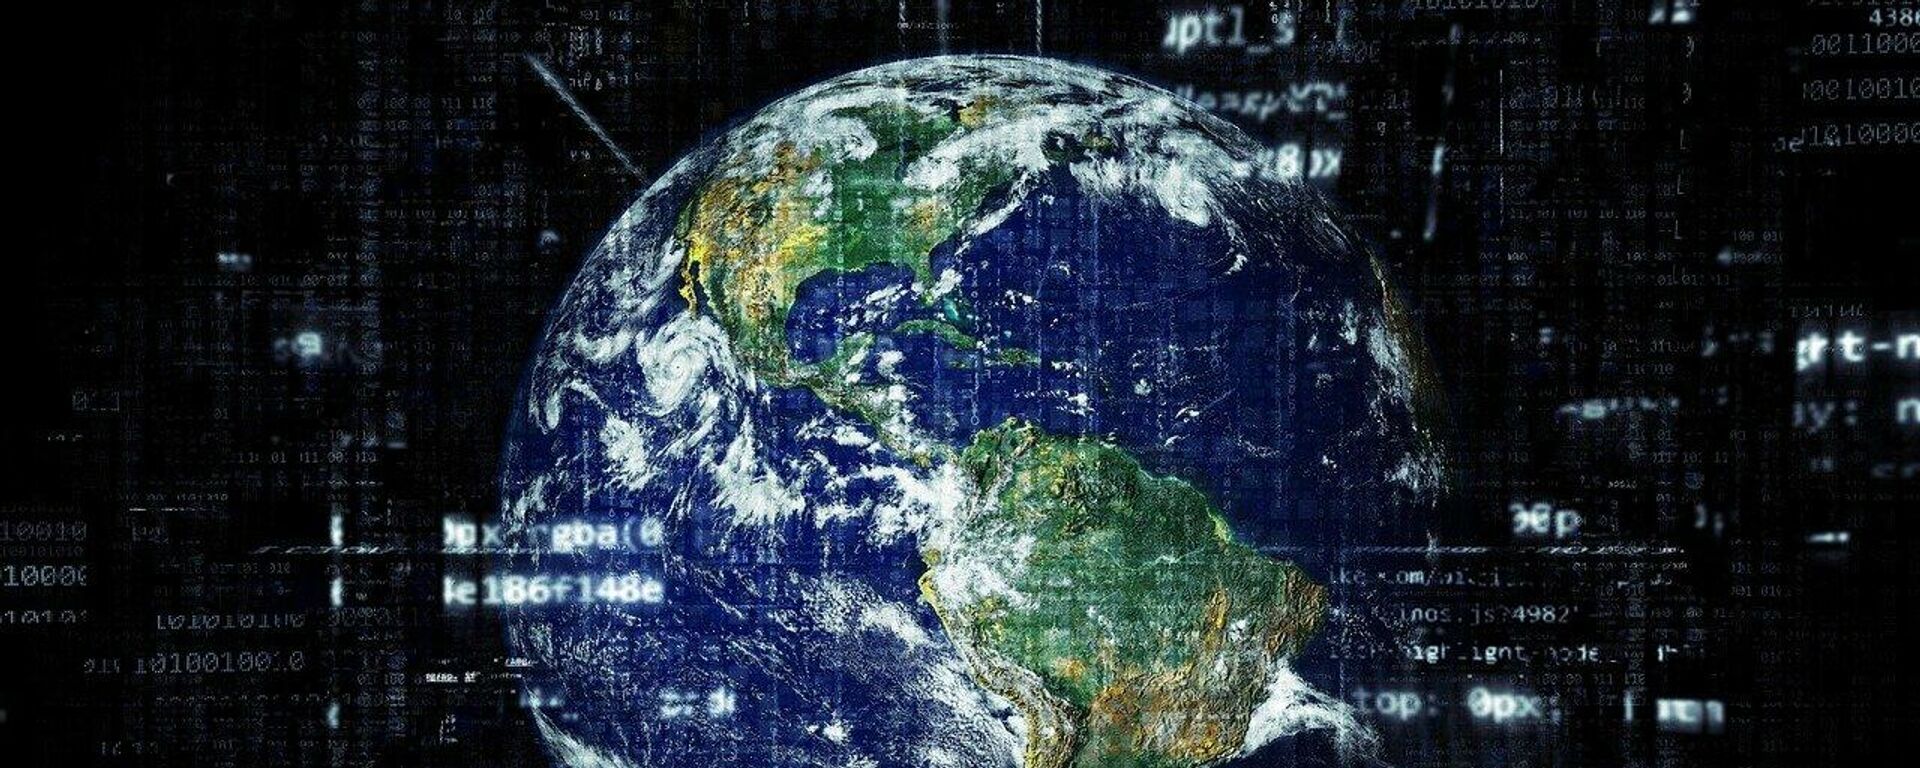 ¿Qué es el colonialismo de datos? - Sputnik Mundo, 1920, 25.10.2021